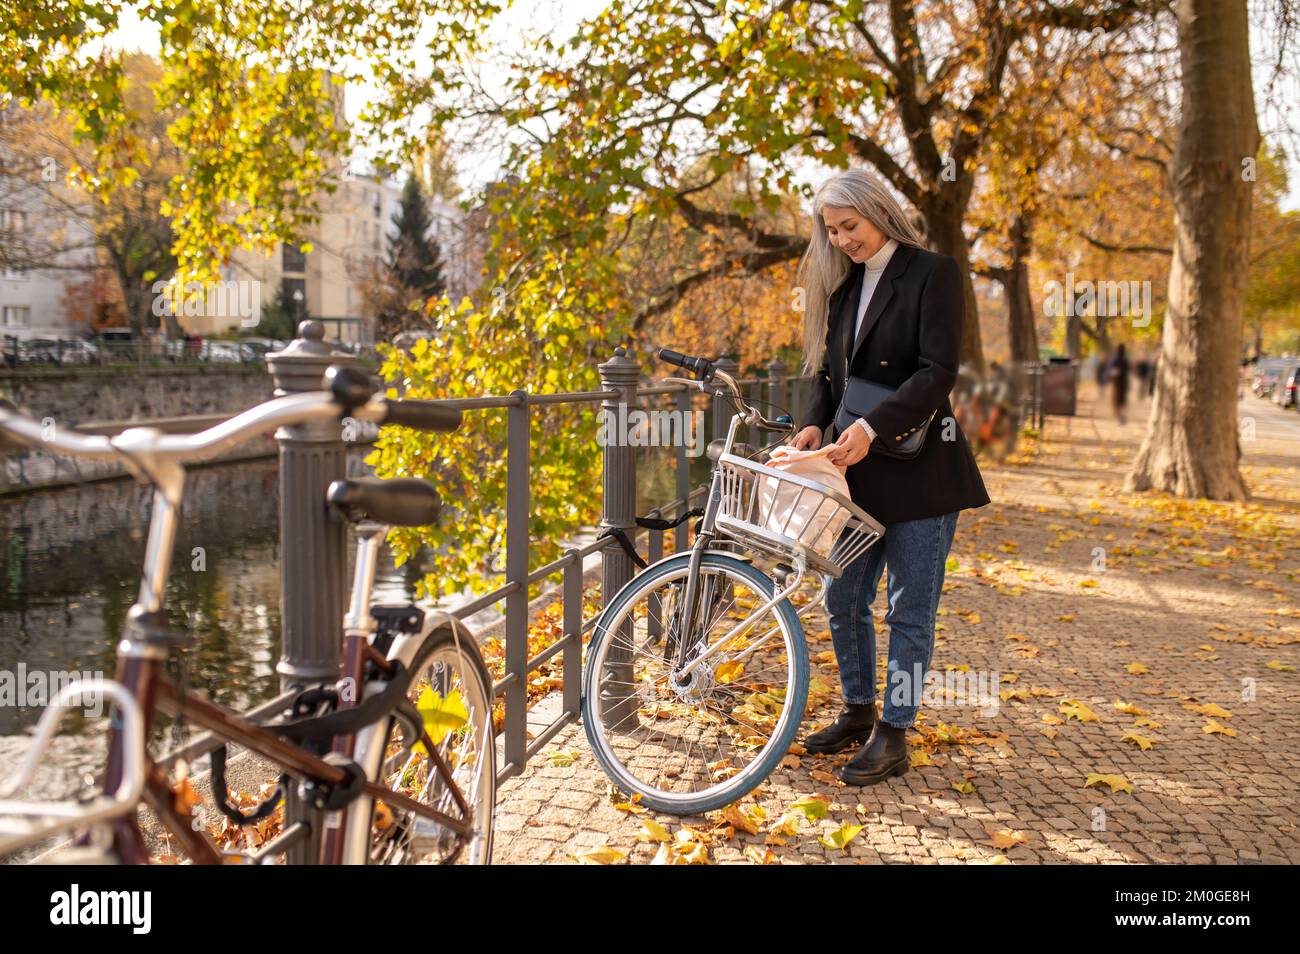 Mujer alquilando una bicicleta de calle en una calle de otoño Foto de stock